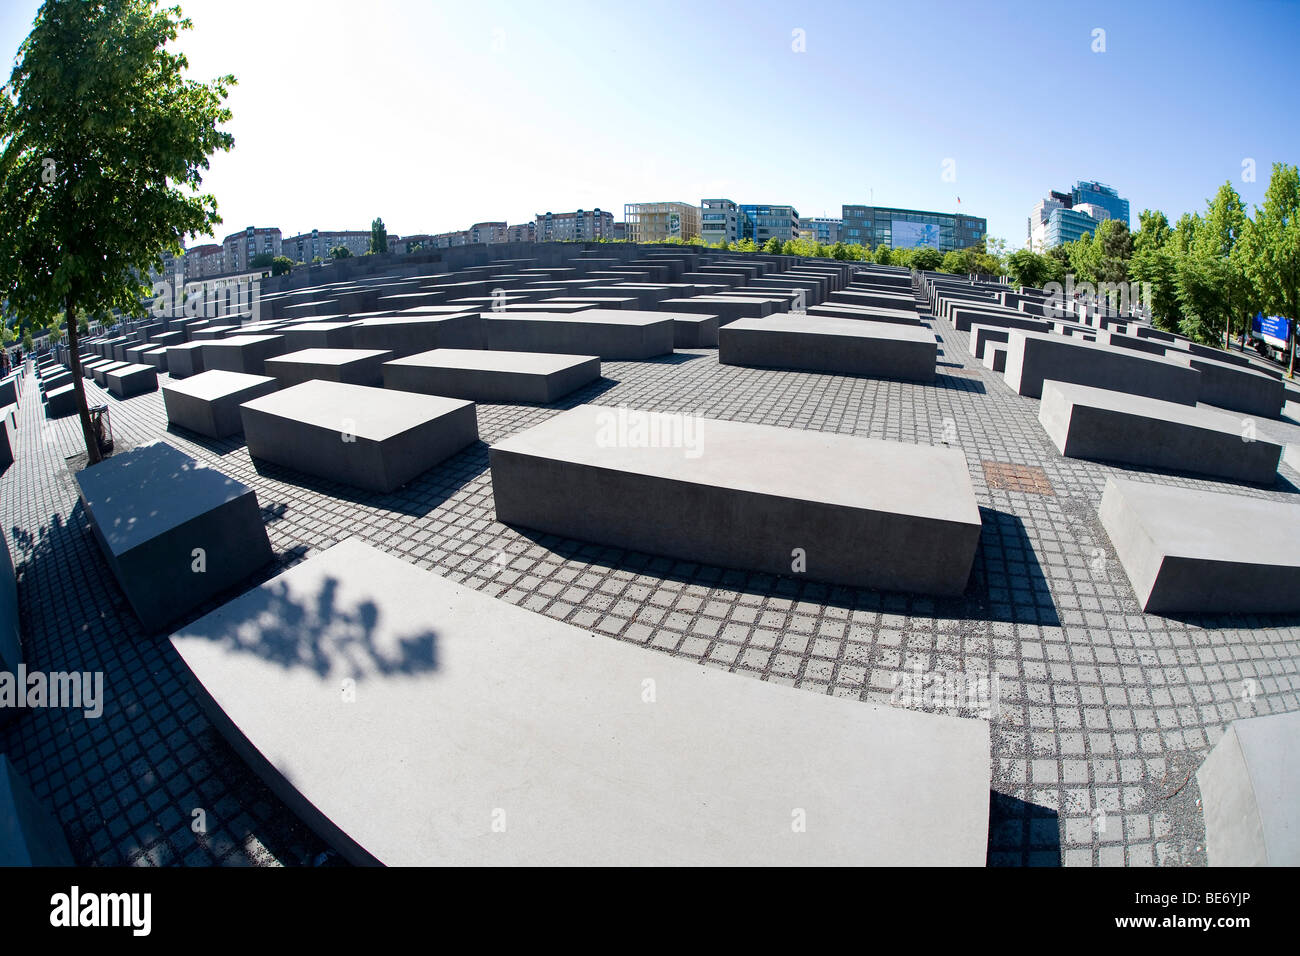 Mémorial de l'holocauste, le mémorial aux Juifs assassinés d'Europe, prise avec un objectif fisheye, Berlin-Mitte, Germany, Europe Banque D'Images